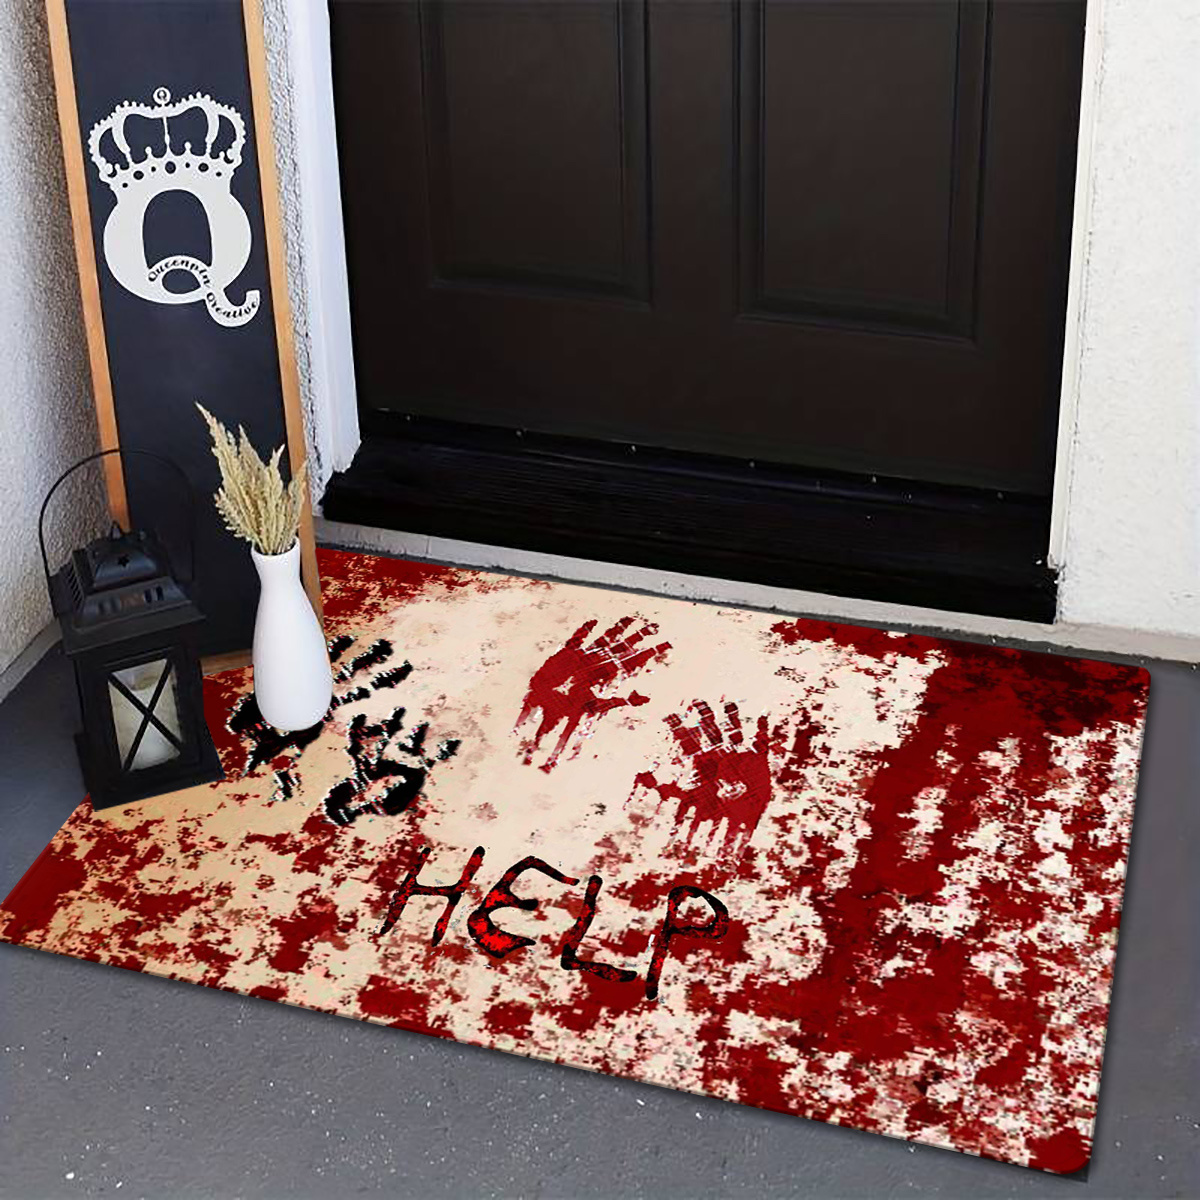 Halloween Bloody Footprint Carpet Runner - Party Tableware Decoration Floor  Door